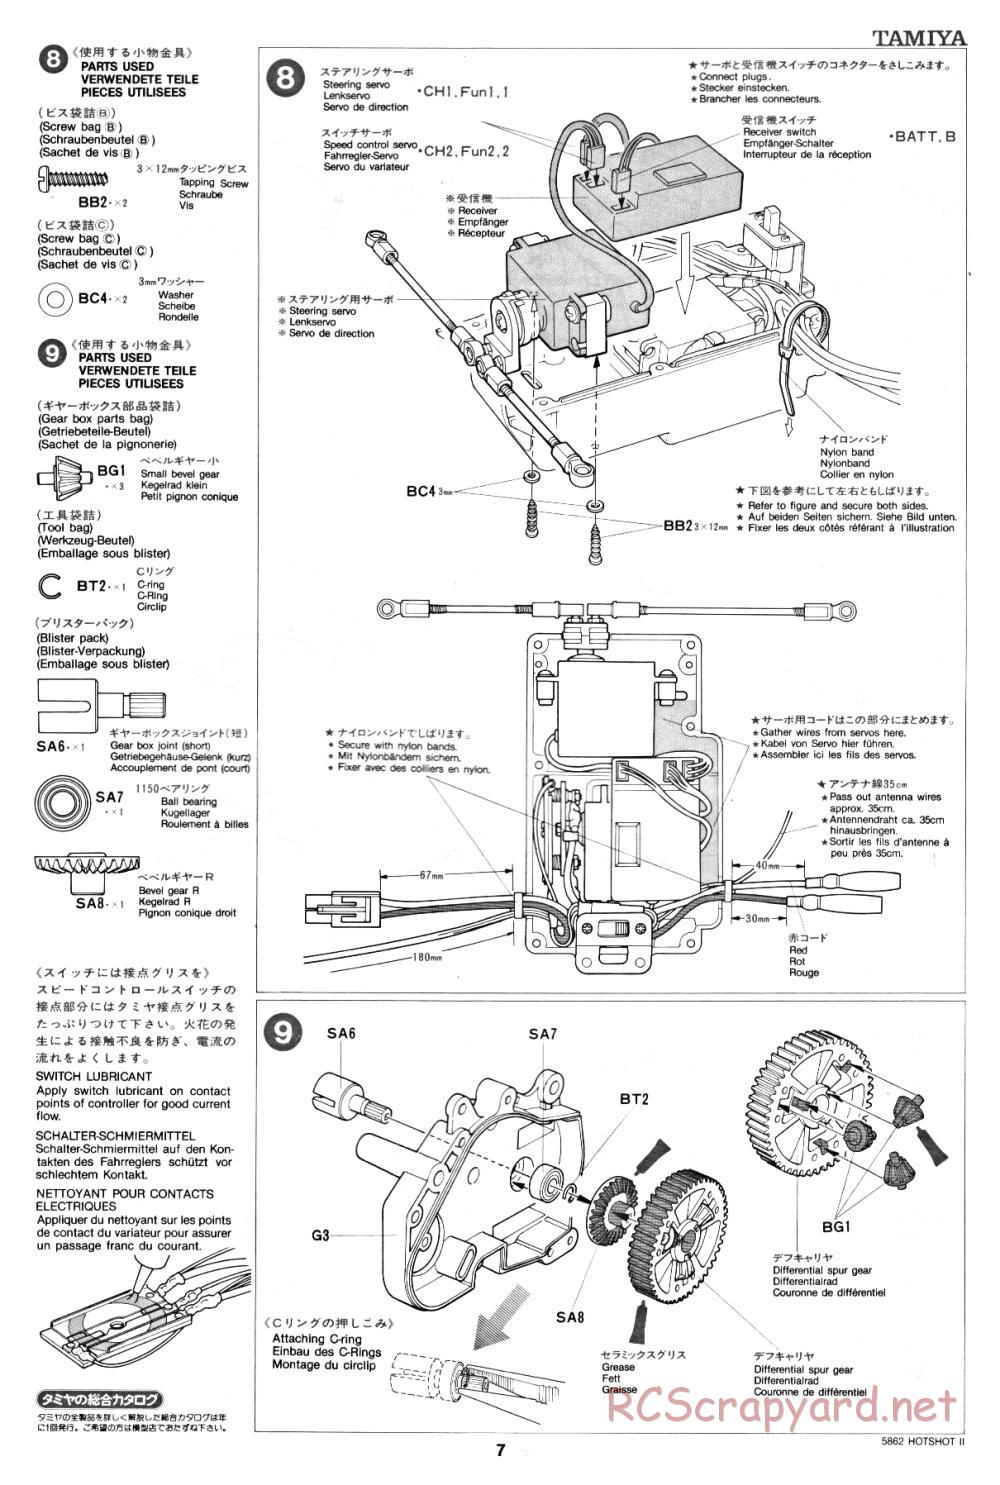 Tamiya - Hot-Shot II - 58062 - Manual - Page 7